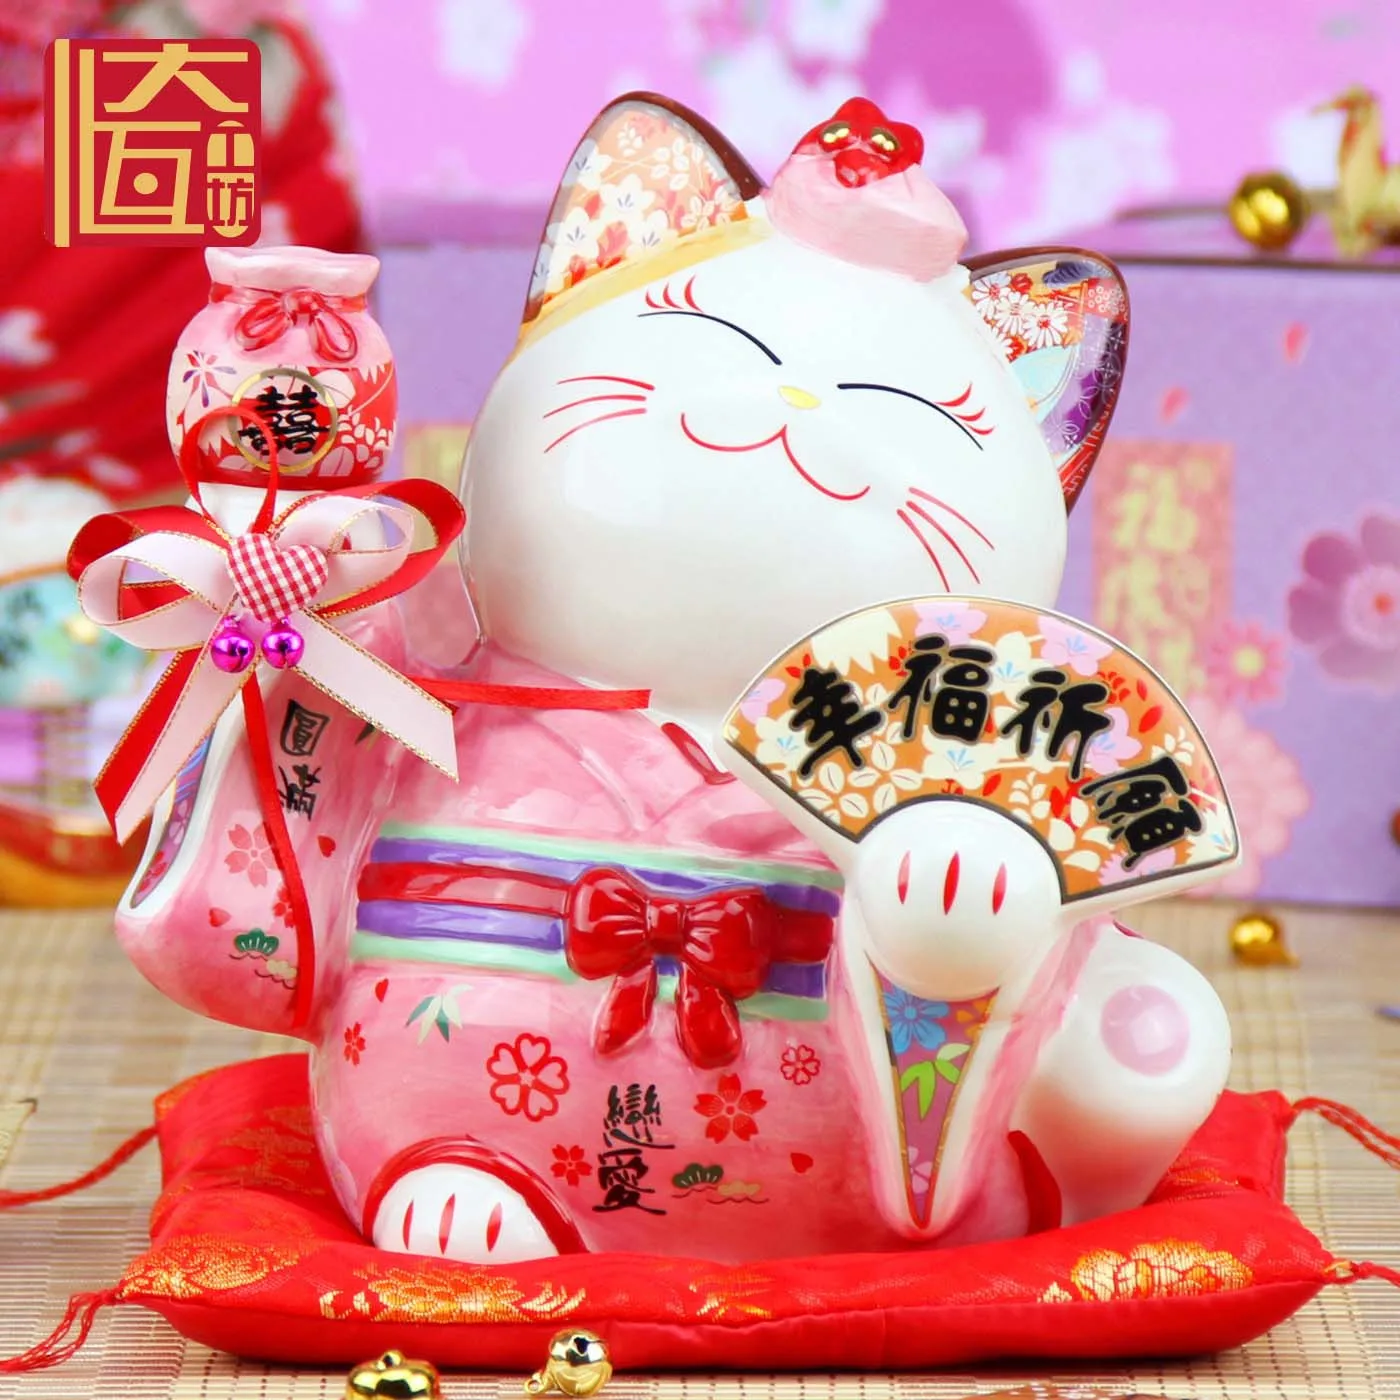 5 дюймов Керамический счастливый кот копилка украшения креативное украшение дома фэн-шуй Декор молиться счастливый кот ремесла свадебные подарки - Цвет: Розовый